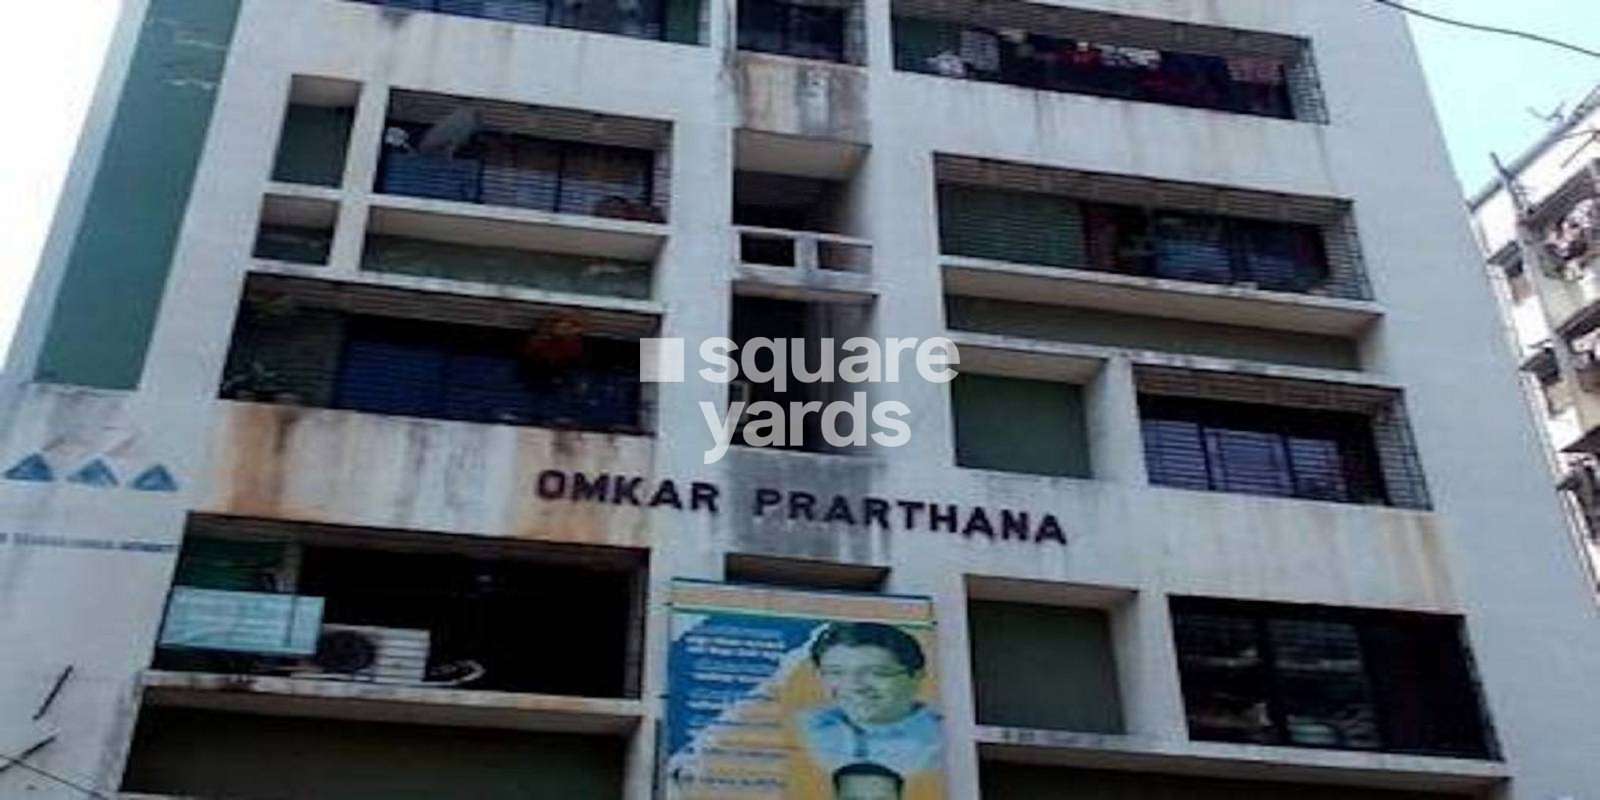 Omkar Prarthana Apartment Cover Image